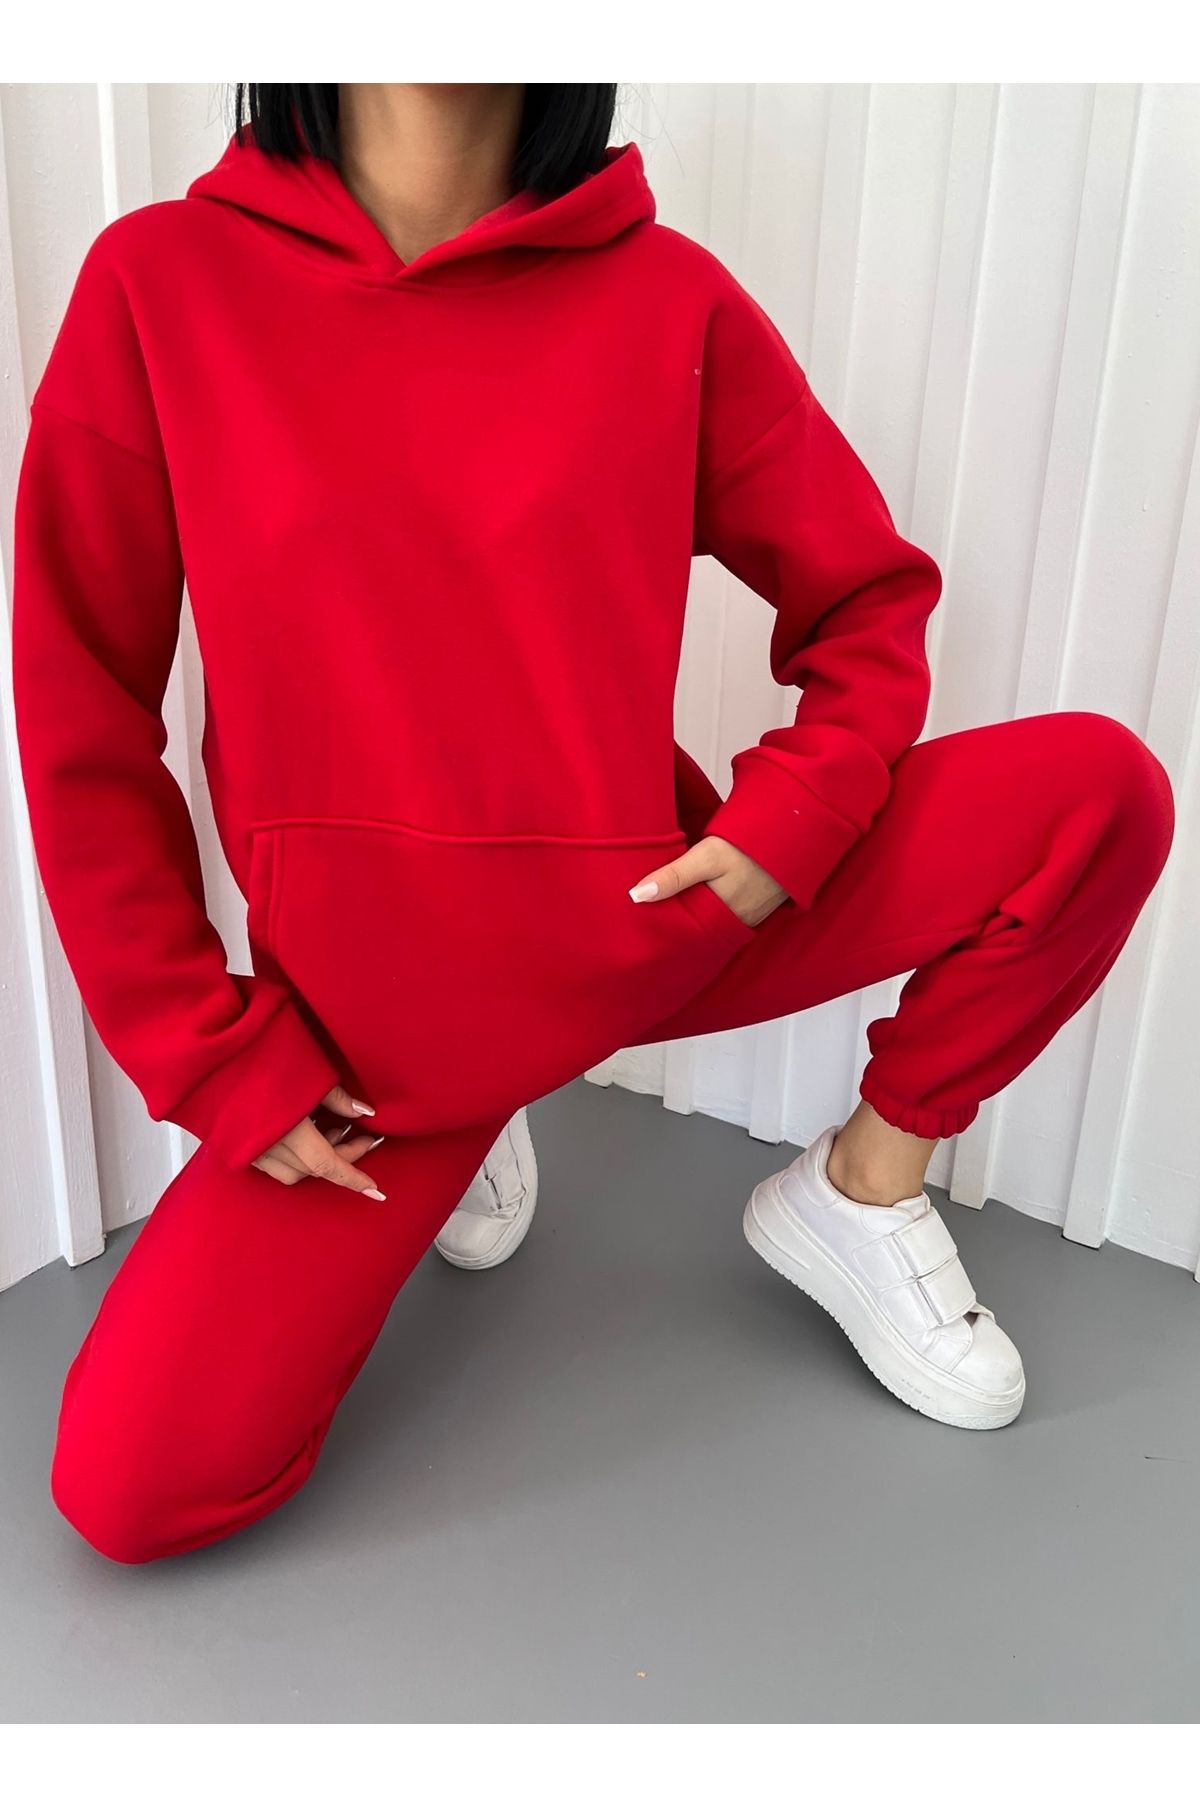 bayansepeti Üç İplik Kumaş Kanguru Cepli Kapişonlu Sweatshirt ve Yüksek Bel Alt Kırmızı Spor Eşofman Takım 400